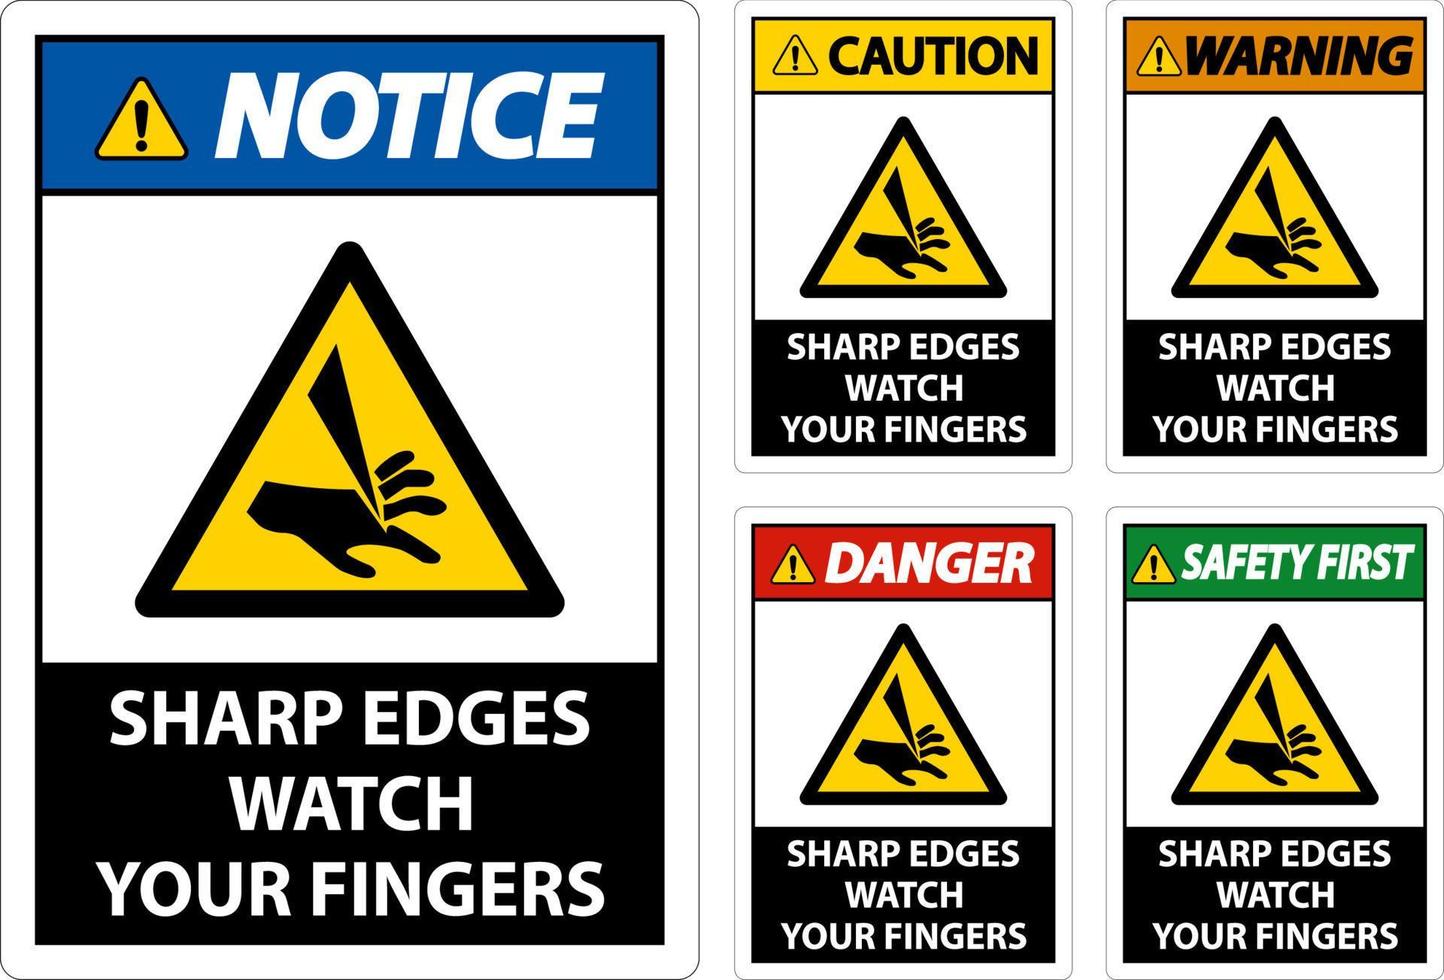 advertencia de bordes afilados cuidado con los dedos sobre fondo blanco vector